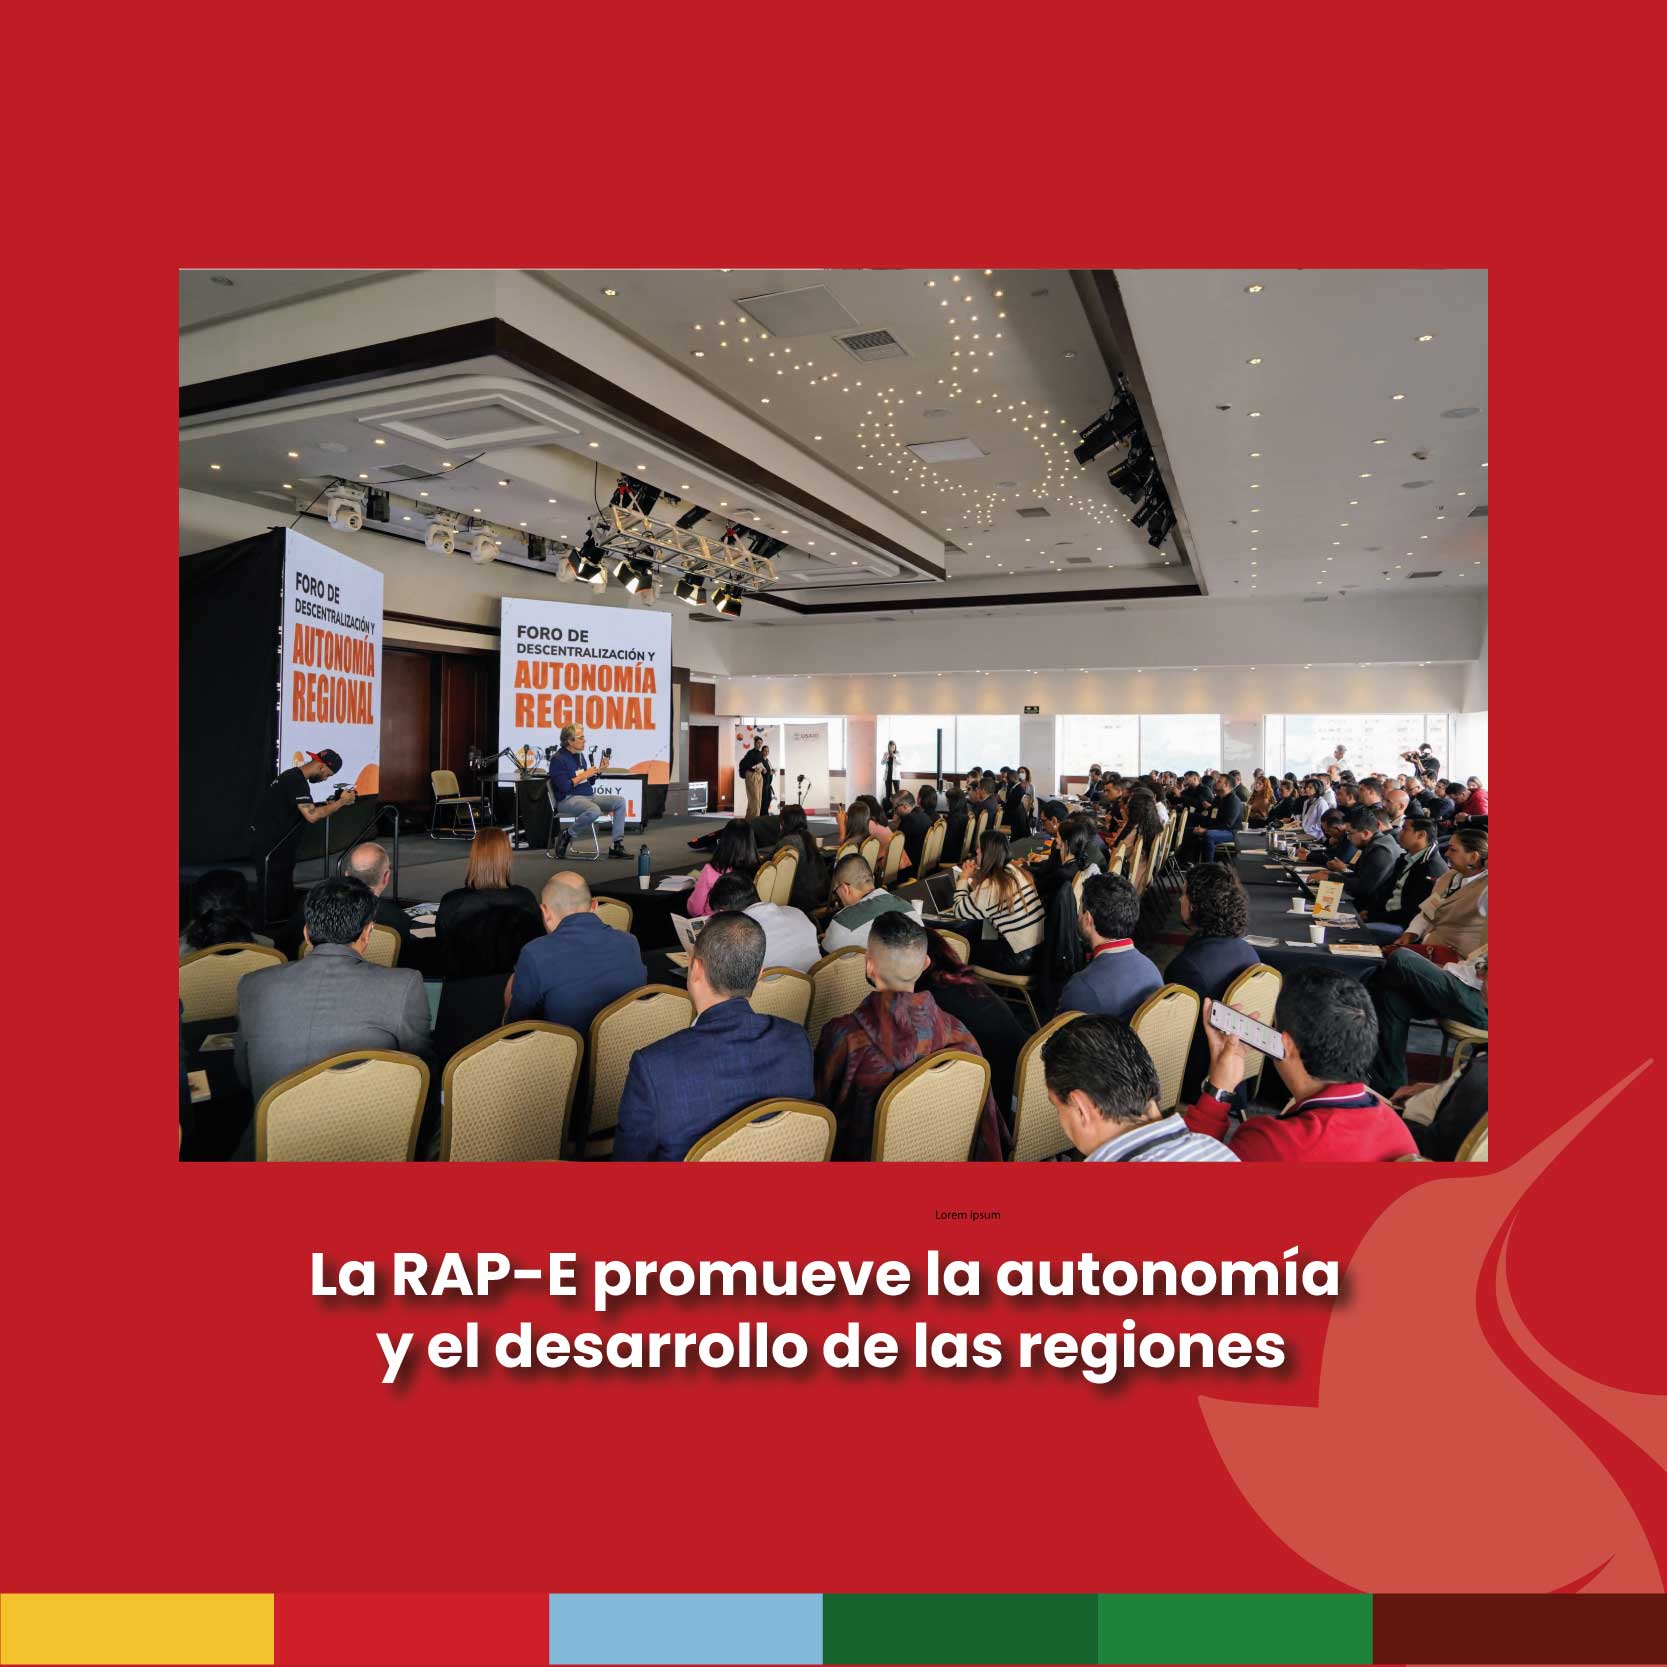 La RAP-E promueve la autonomía y el desarrollo de las regiones